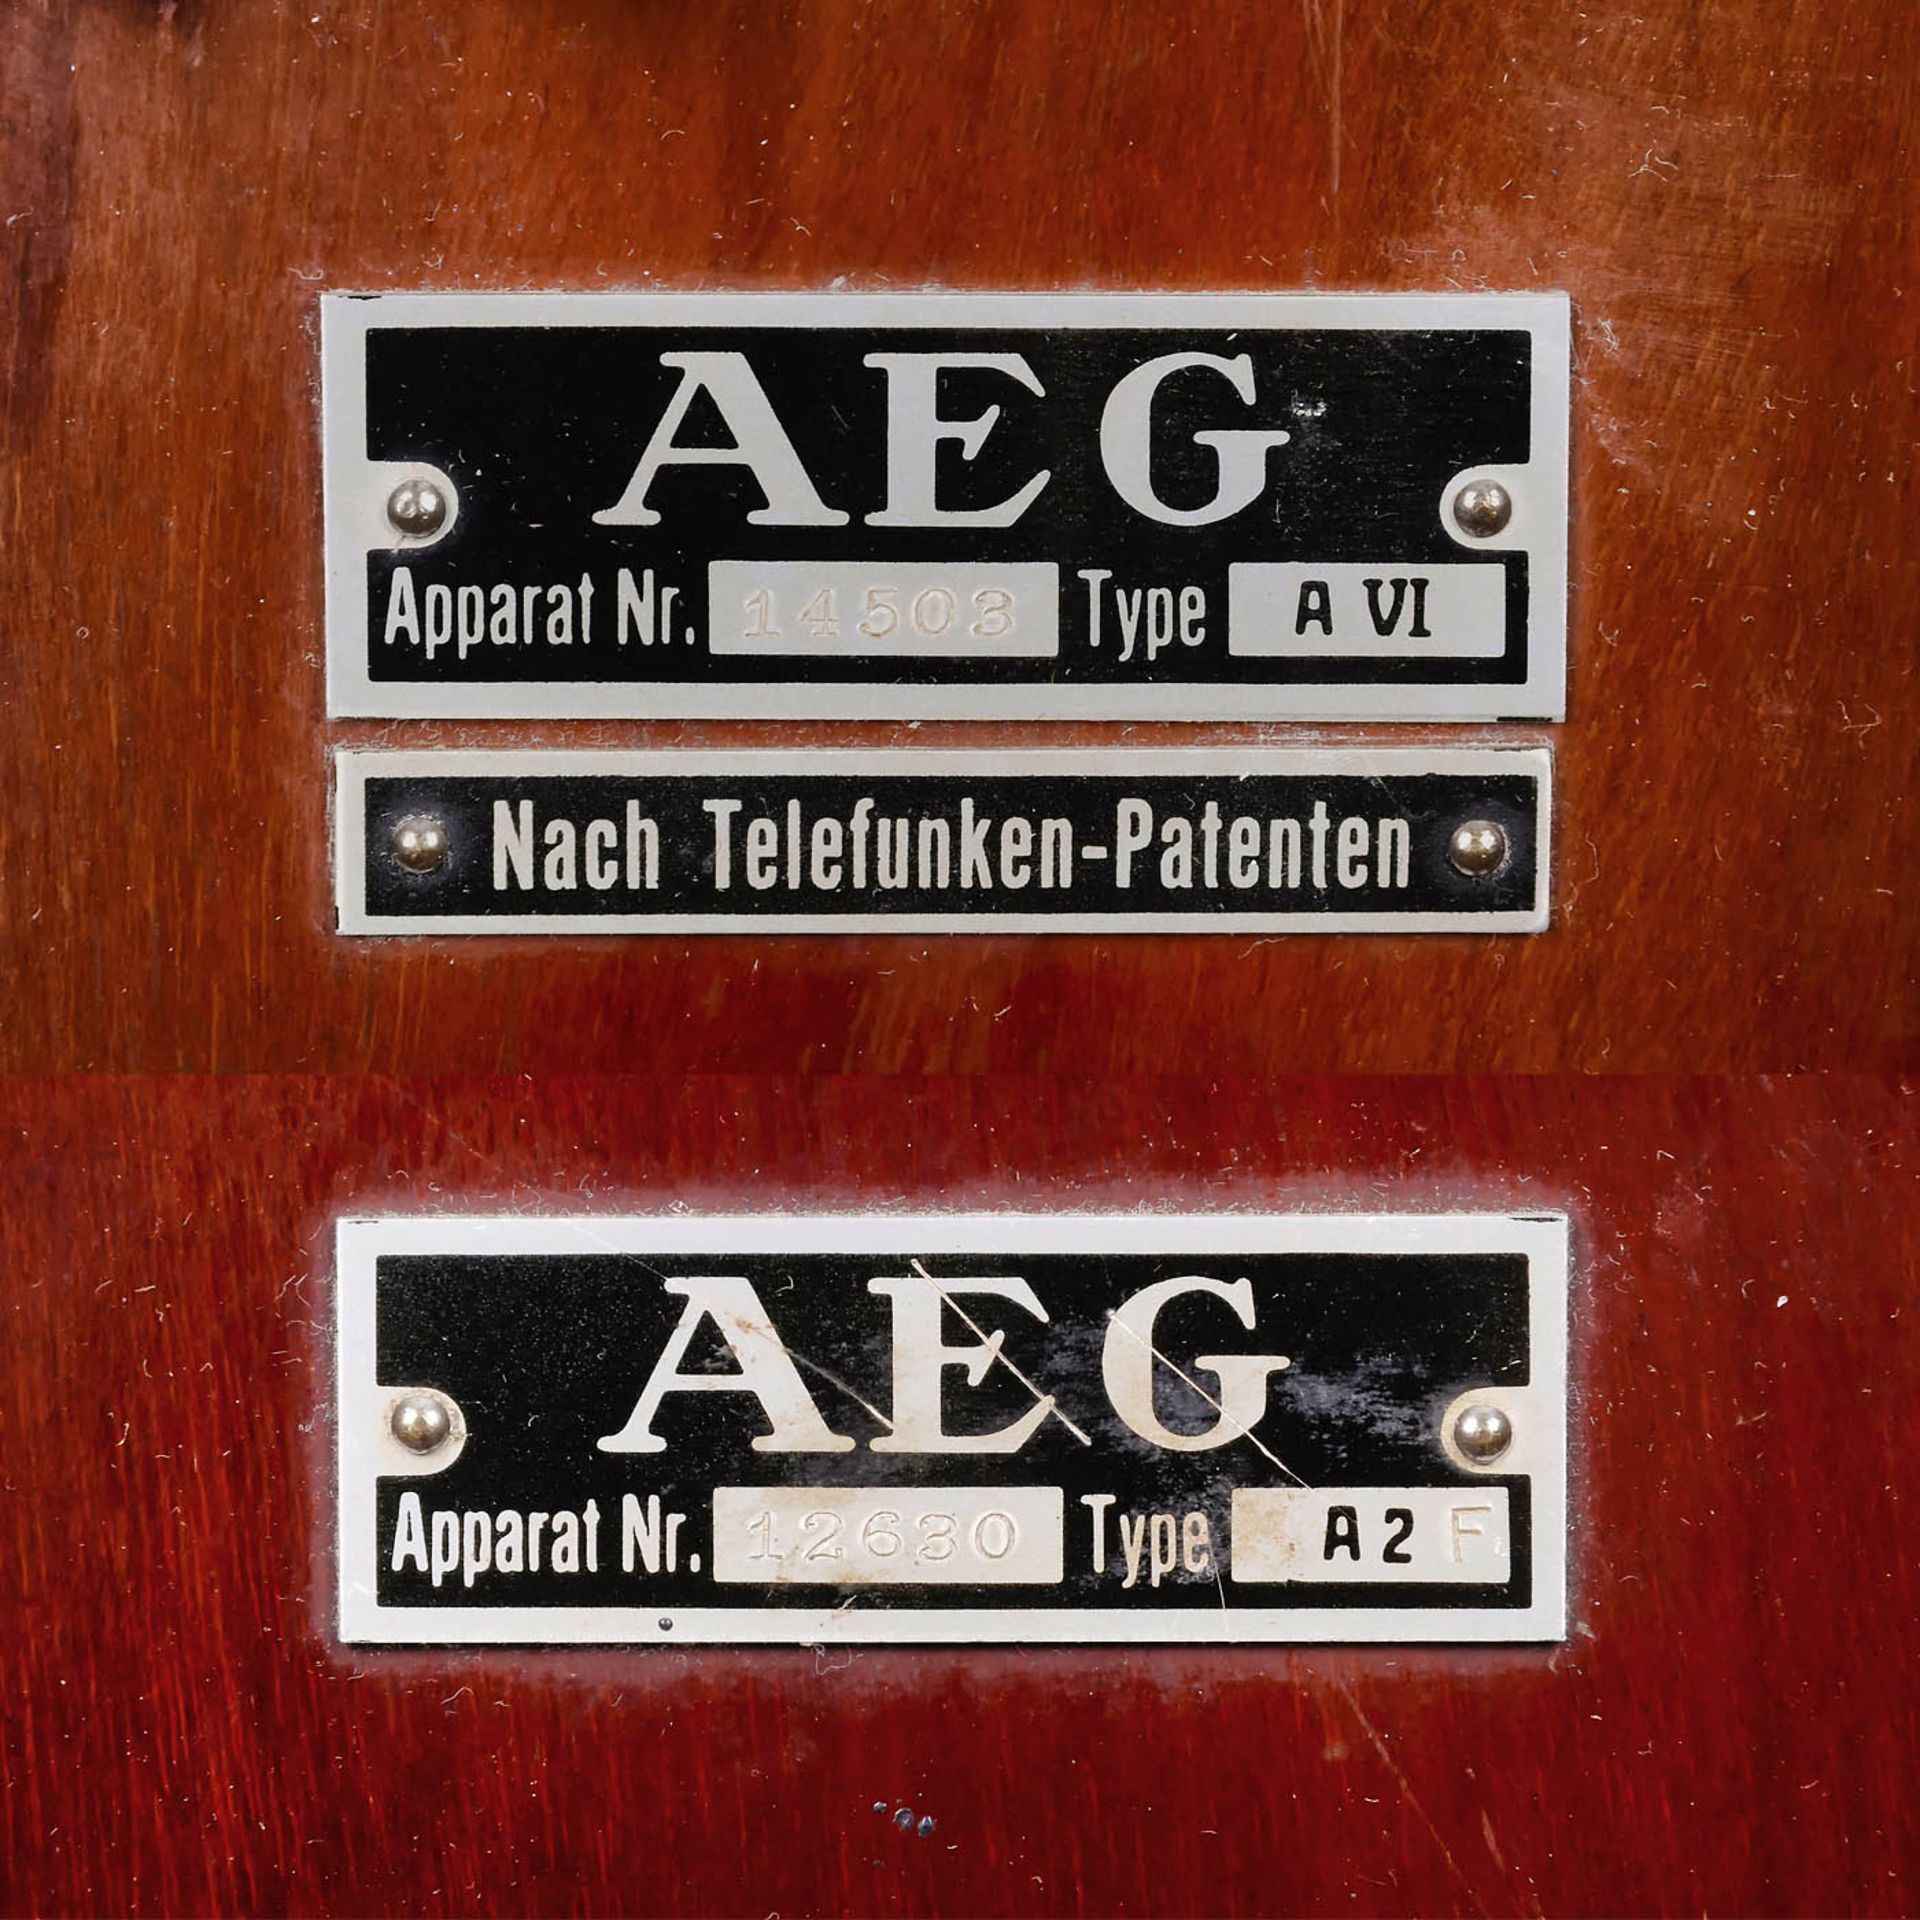 Radioempfänger AEG D-Zug, 1924/25AEG (Allgemeine Elektricitäts Gesellschaft, Berlin). Nach - Image 6 of 6